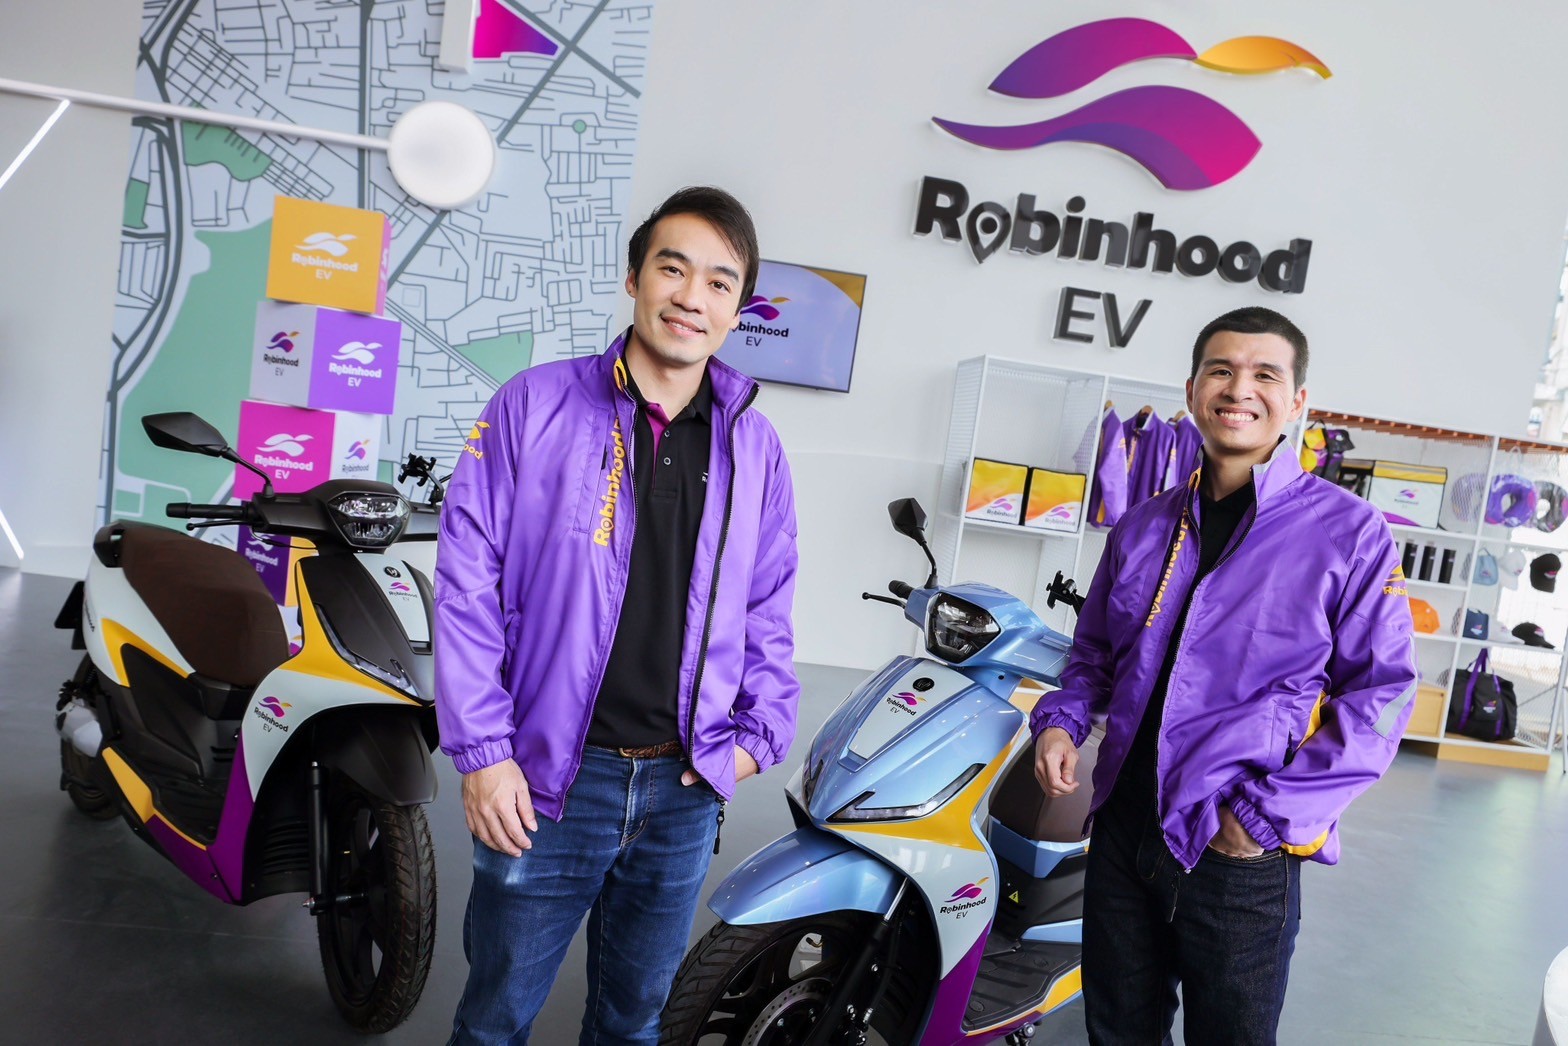 Robinhood มุ่งขับเคลื่อนธุรกิจสีเขียว เปิดตัว “Robinhood EV” แพลตฟอร์มให้เช่ามอเตอร์ไซค์ไฟฟ้า หวังเป็นอีกหนึ่งทางเลือกในการขับขี่ที่คุ้มค่าของไรเดอร์